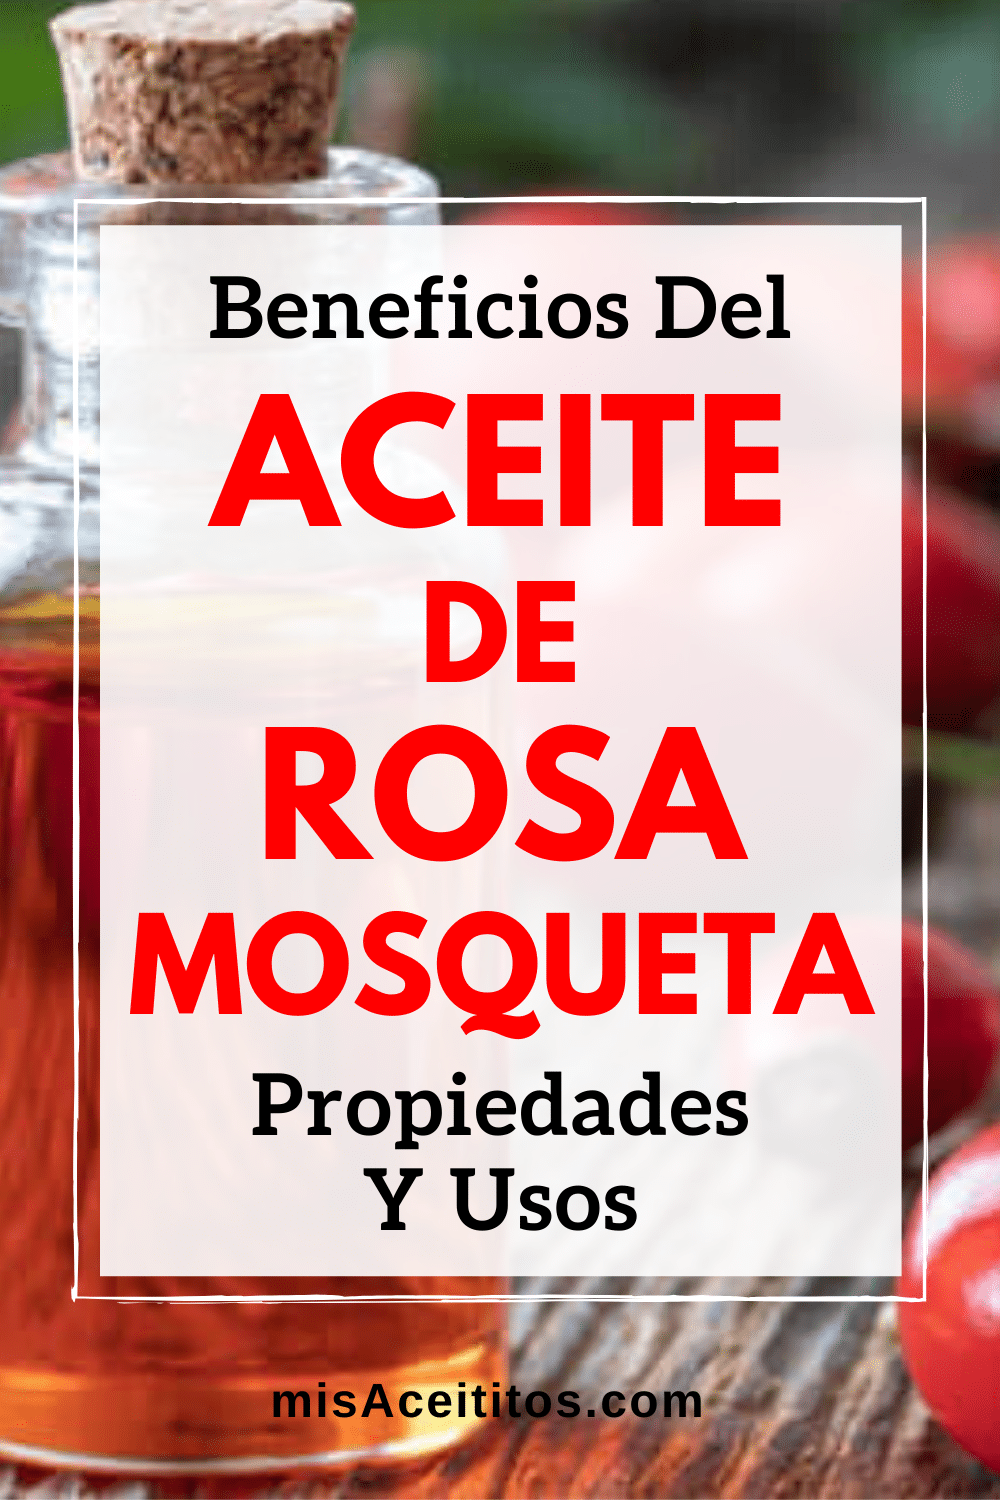 Aceite de Rosa Mosqueta: qué es, sus propiedades y beneficios, cómo usarlo y las precauciones que debes tener